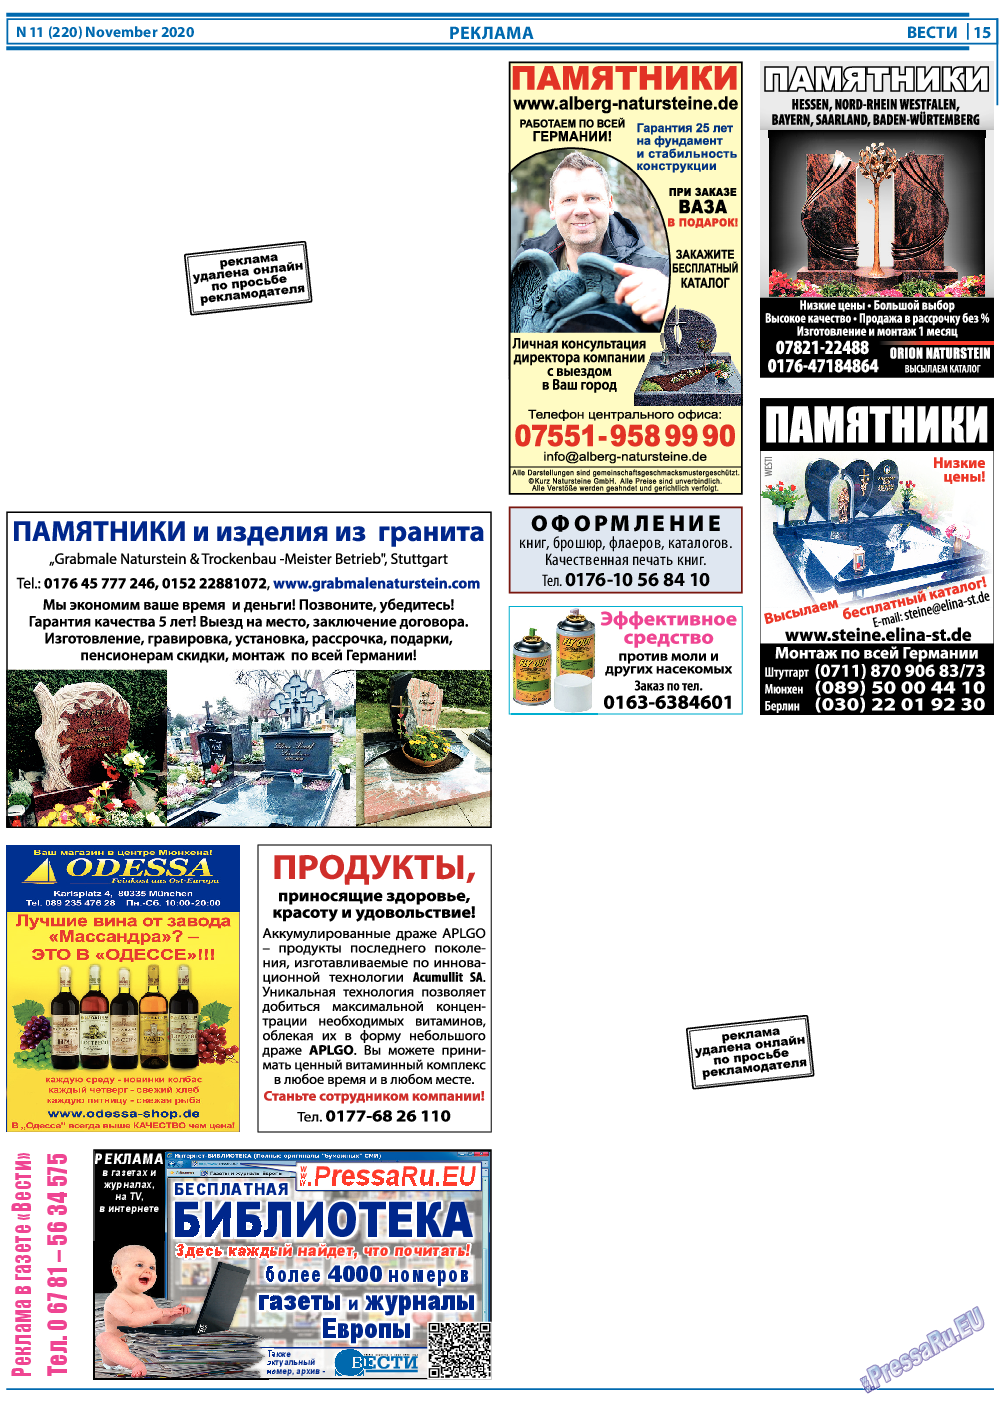 Вести, газета. 2020 №11 стр.15